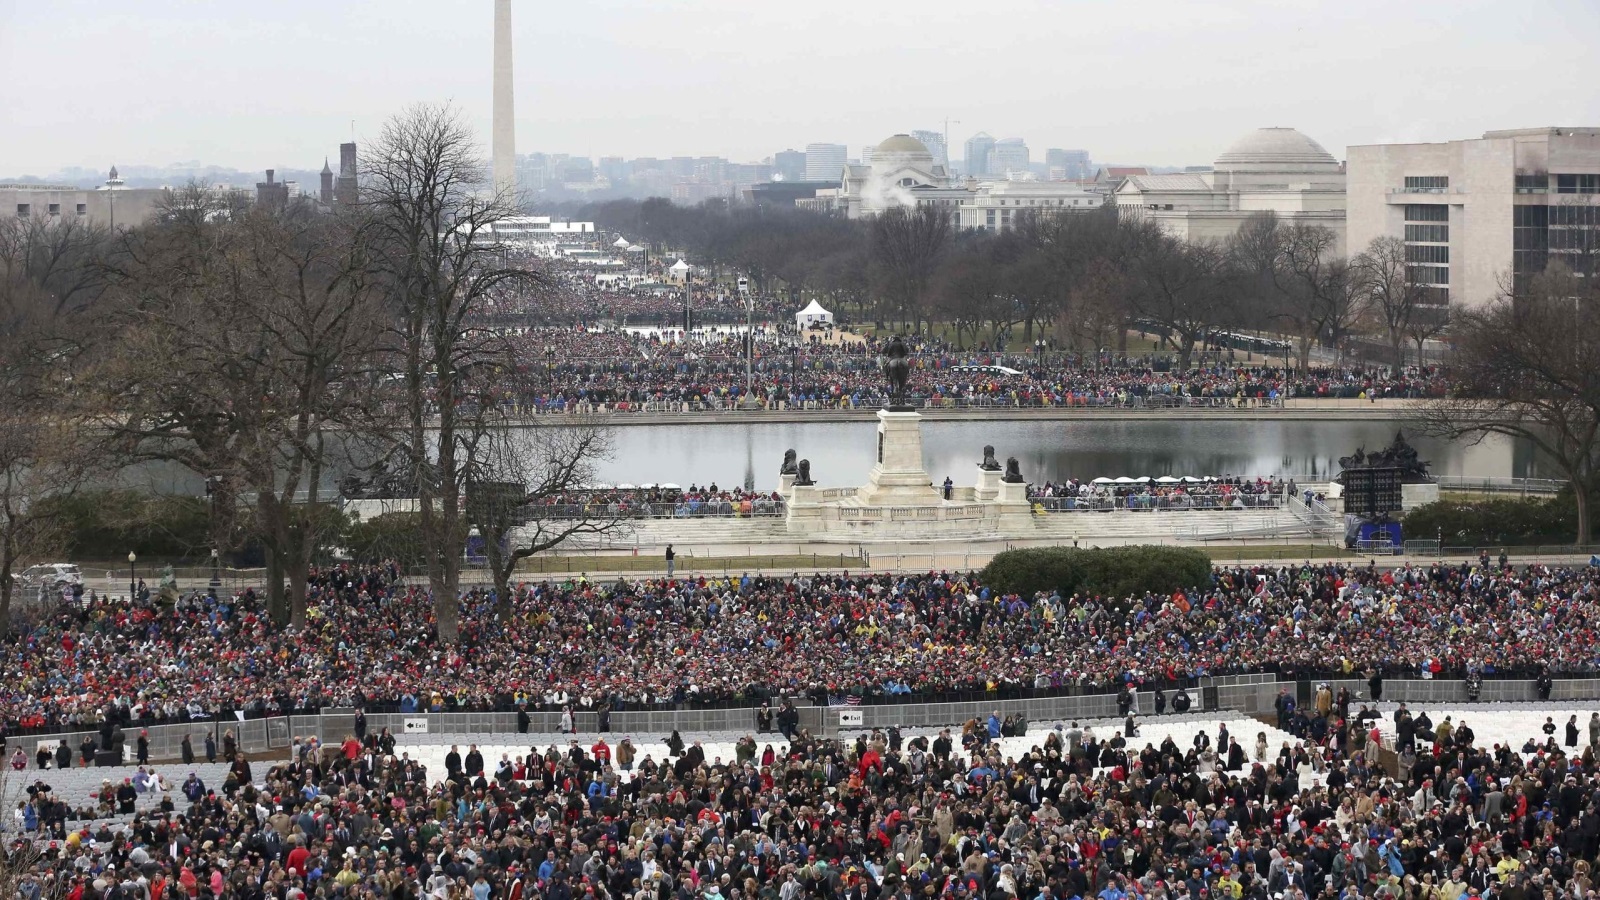 ‪البيت الأبيض قال إن نسبة الحضور في مراسم تنصيب ترمب كانت الأكبر مقارنة بالمراسم السابقة‬ البيت الأبيض قال إن نسبة الحضور في مراسم تنصيب ترمب كانت الأكبر مقارنة بالمراسم السابقة (رويترز)